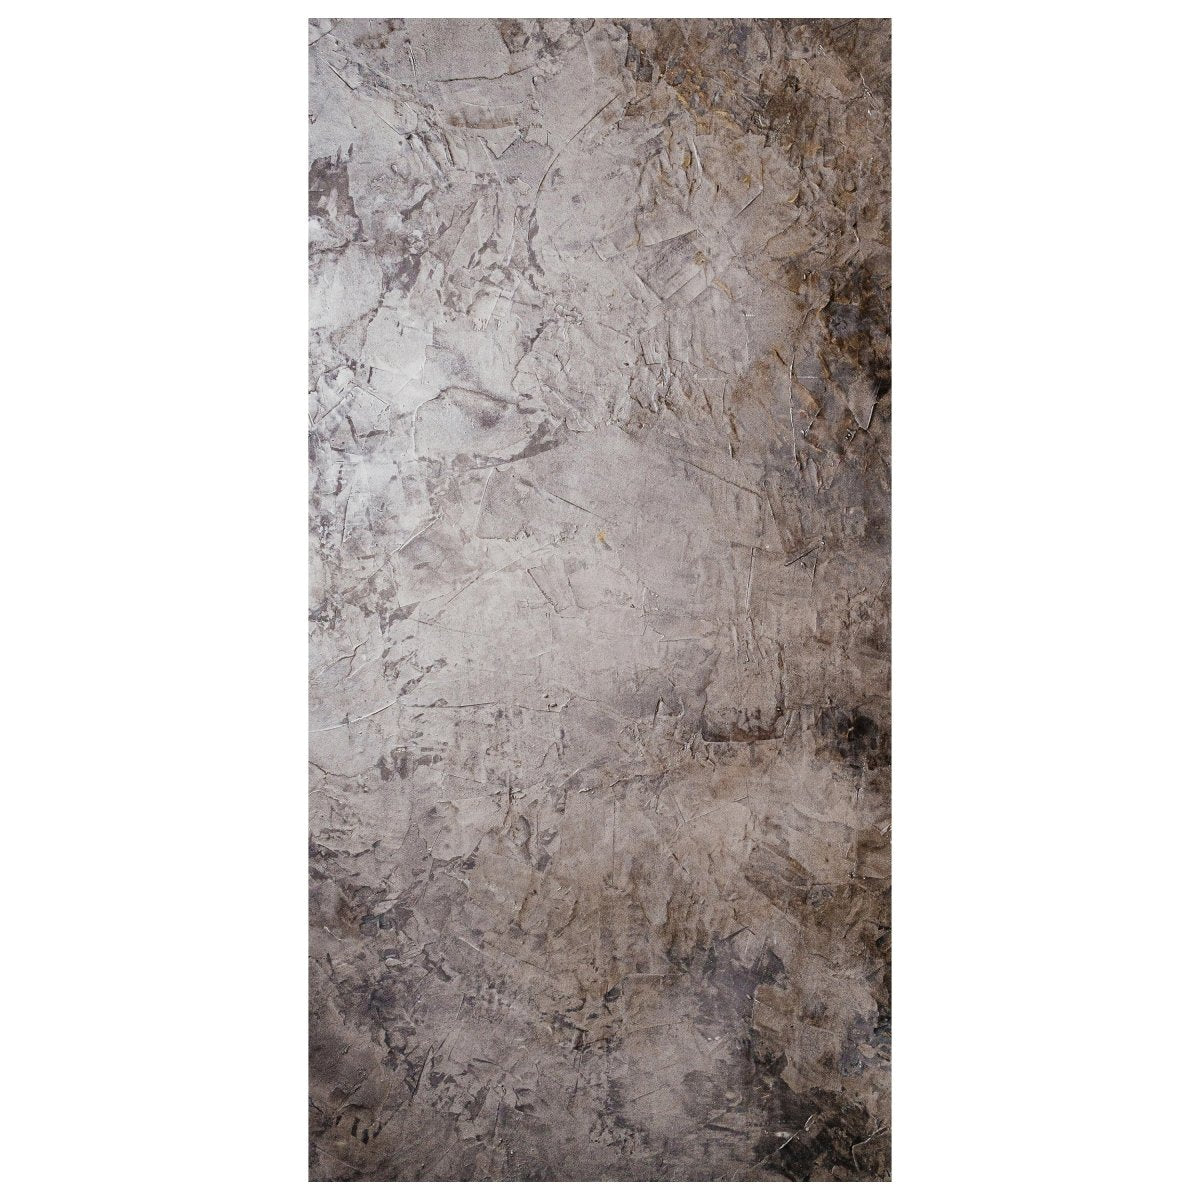 Türtapete graue Grunge Wand, Putz, Struktur M1232 - Bild 2